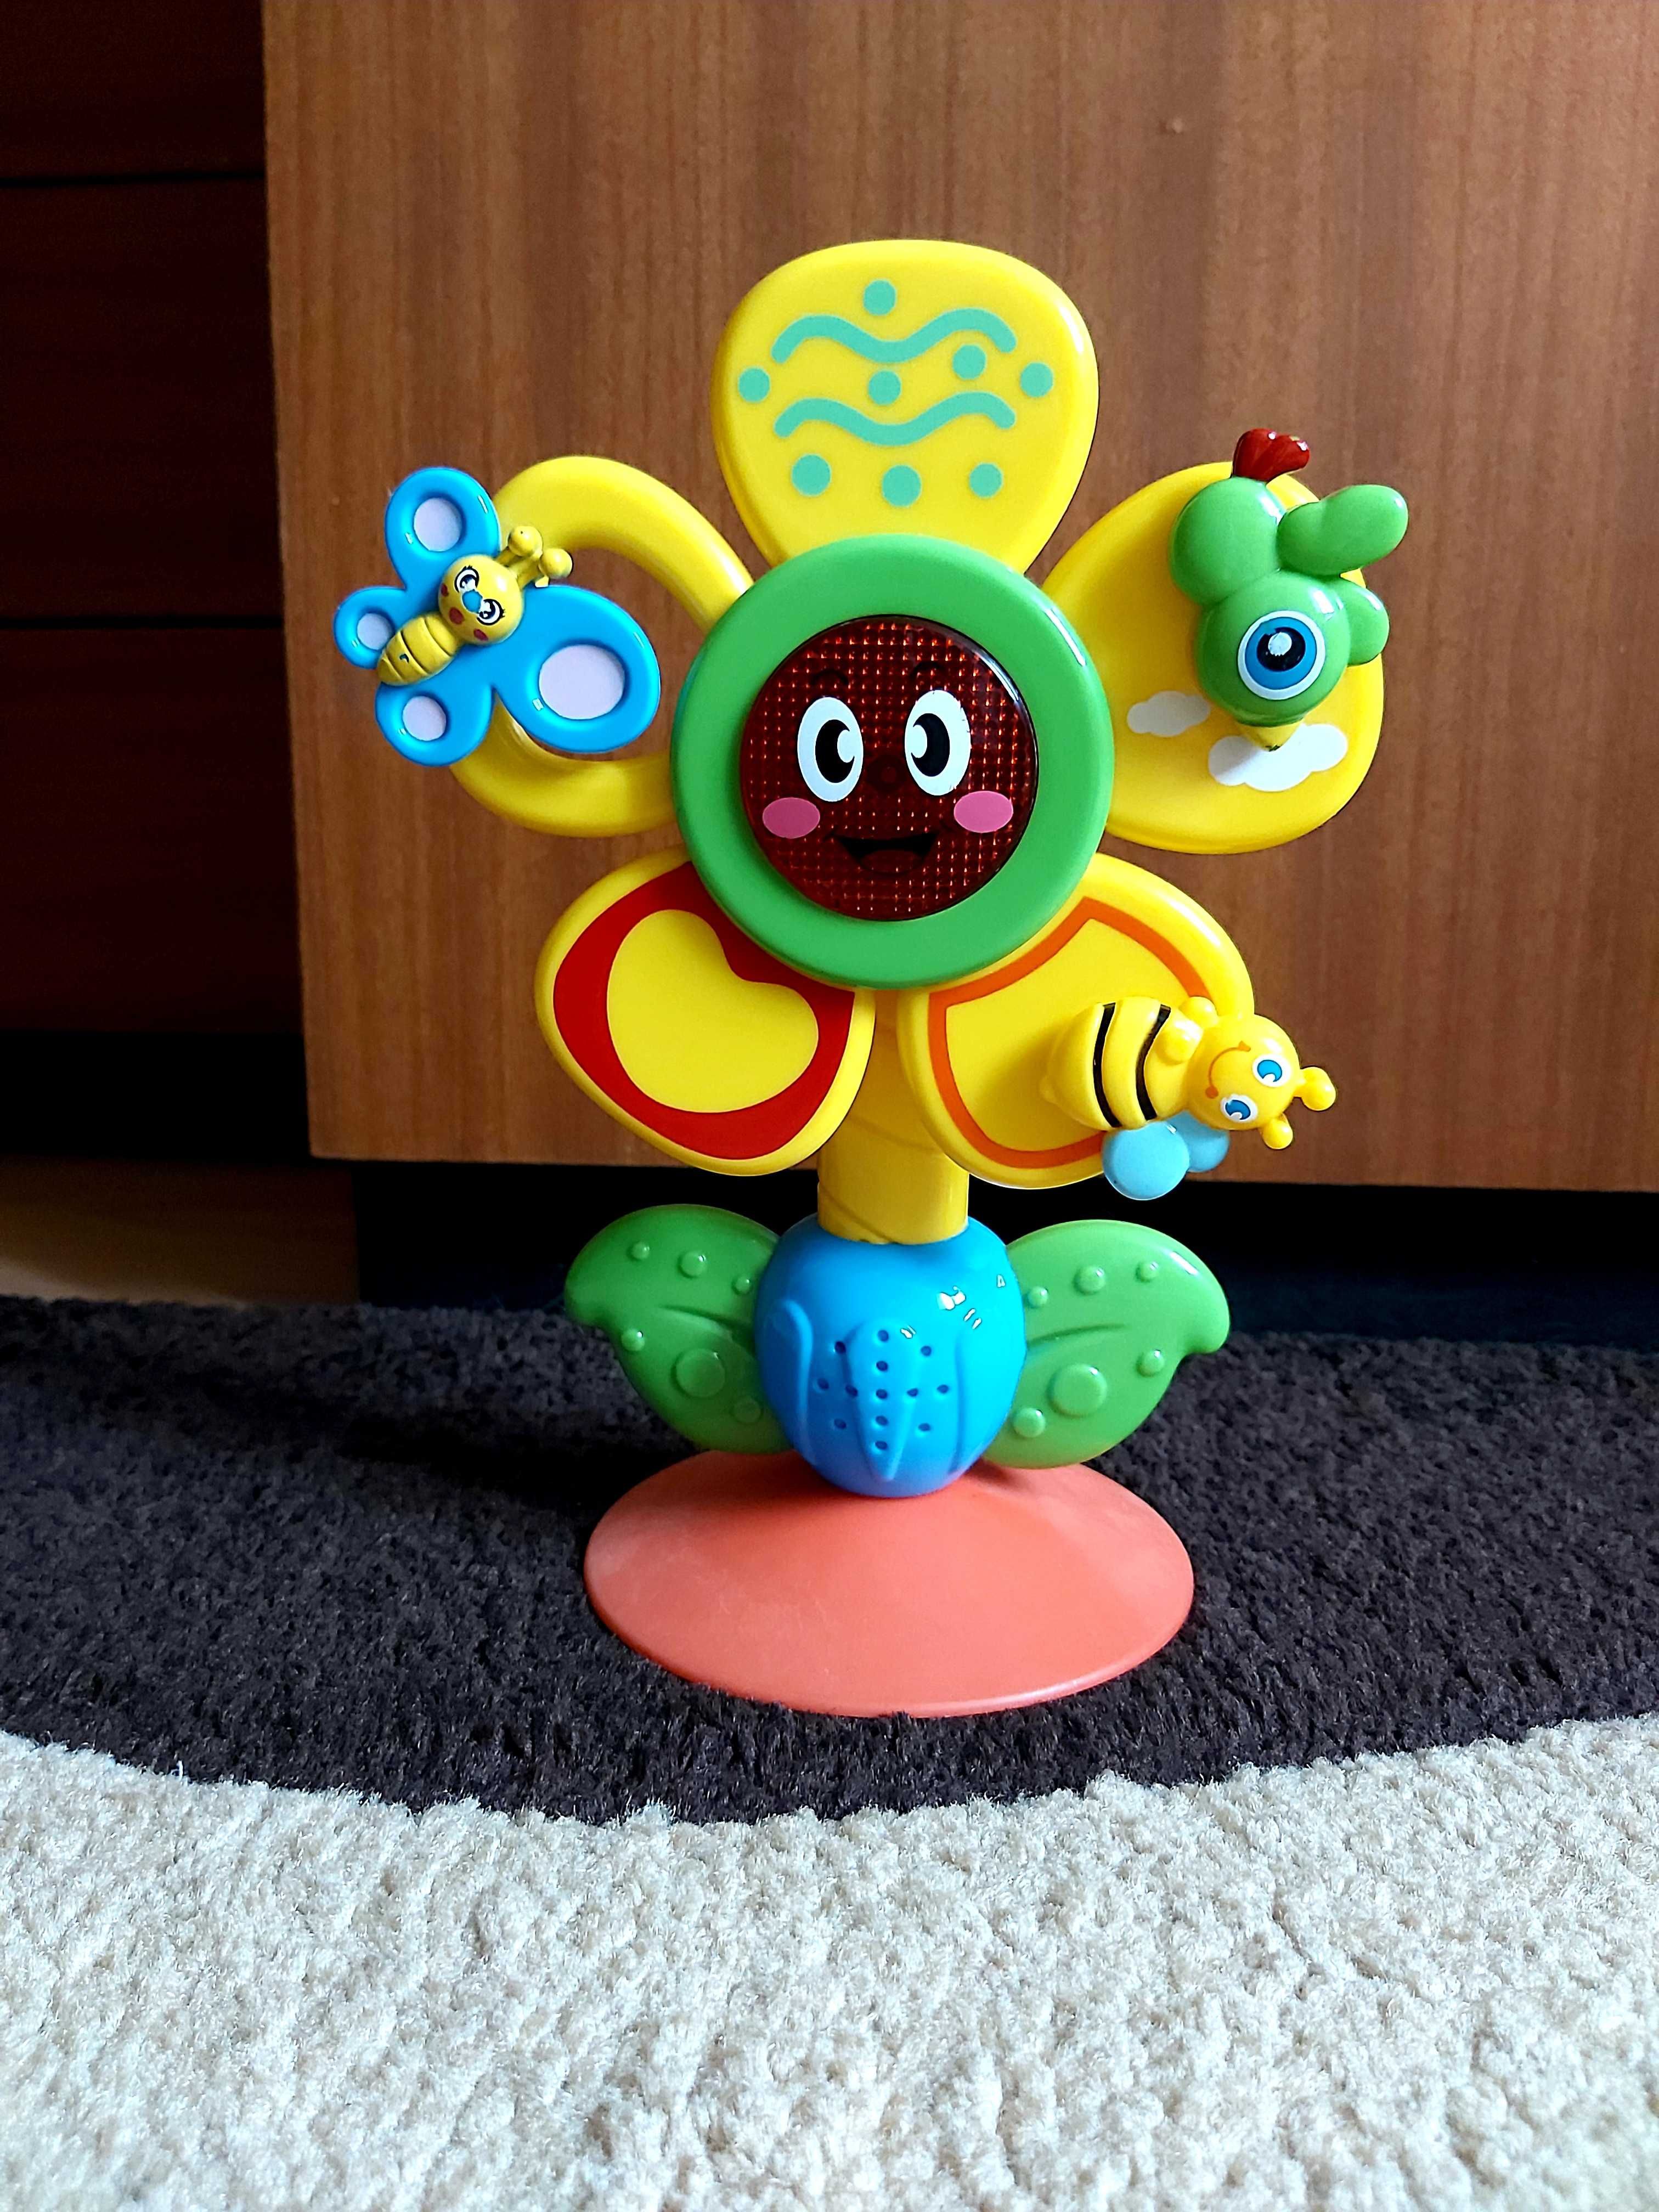 Zabawka kwiatek grający dźwięki melodie piosenki zabawka